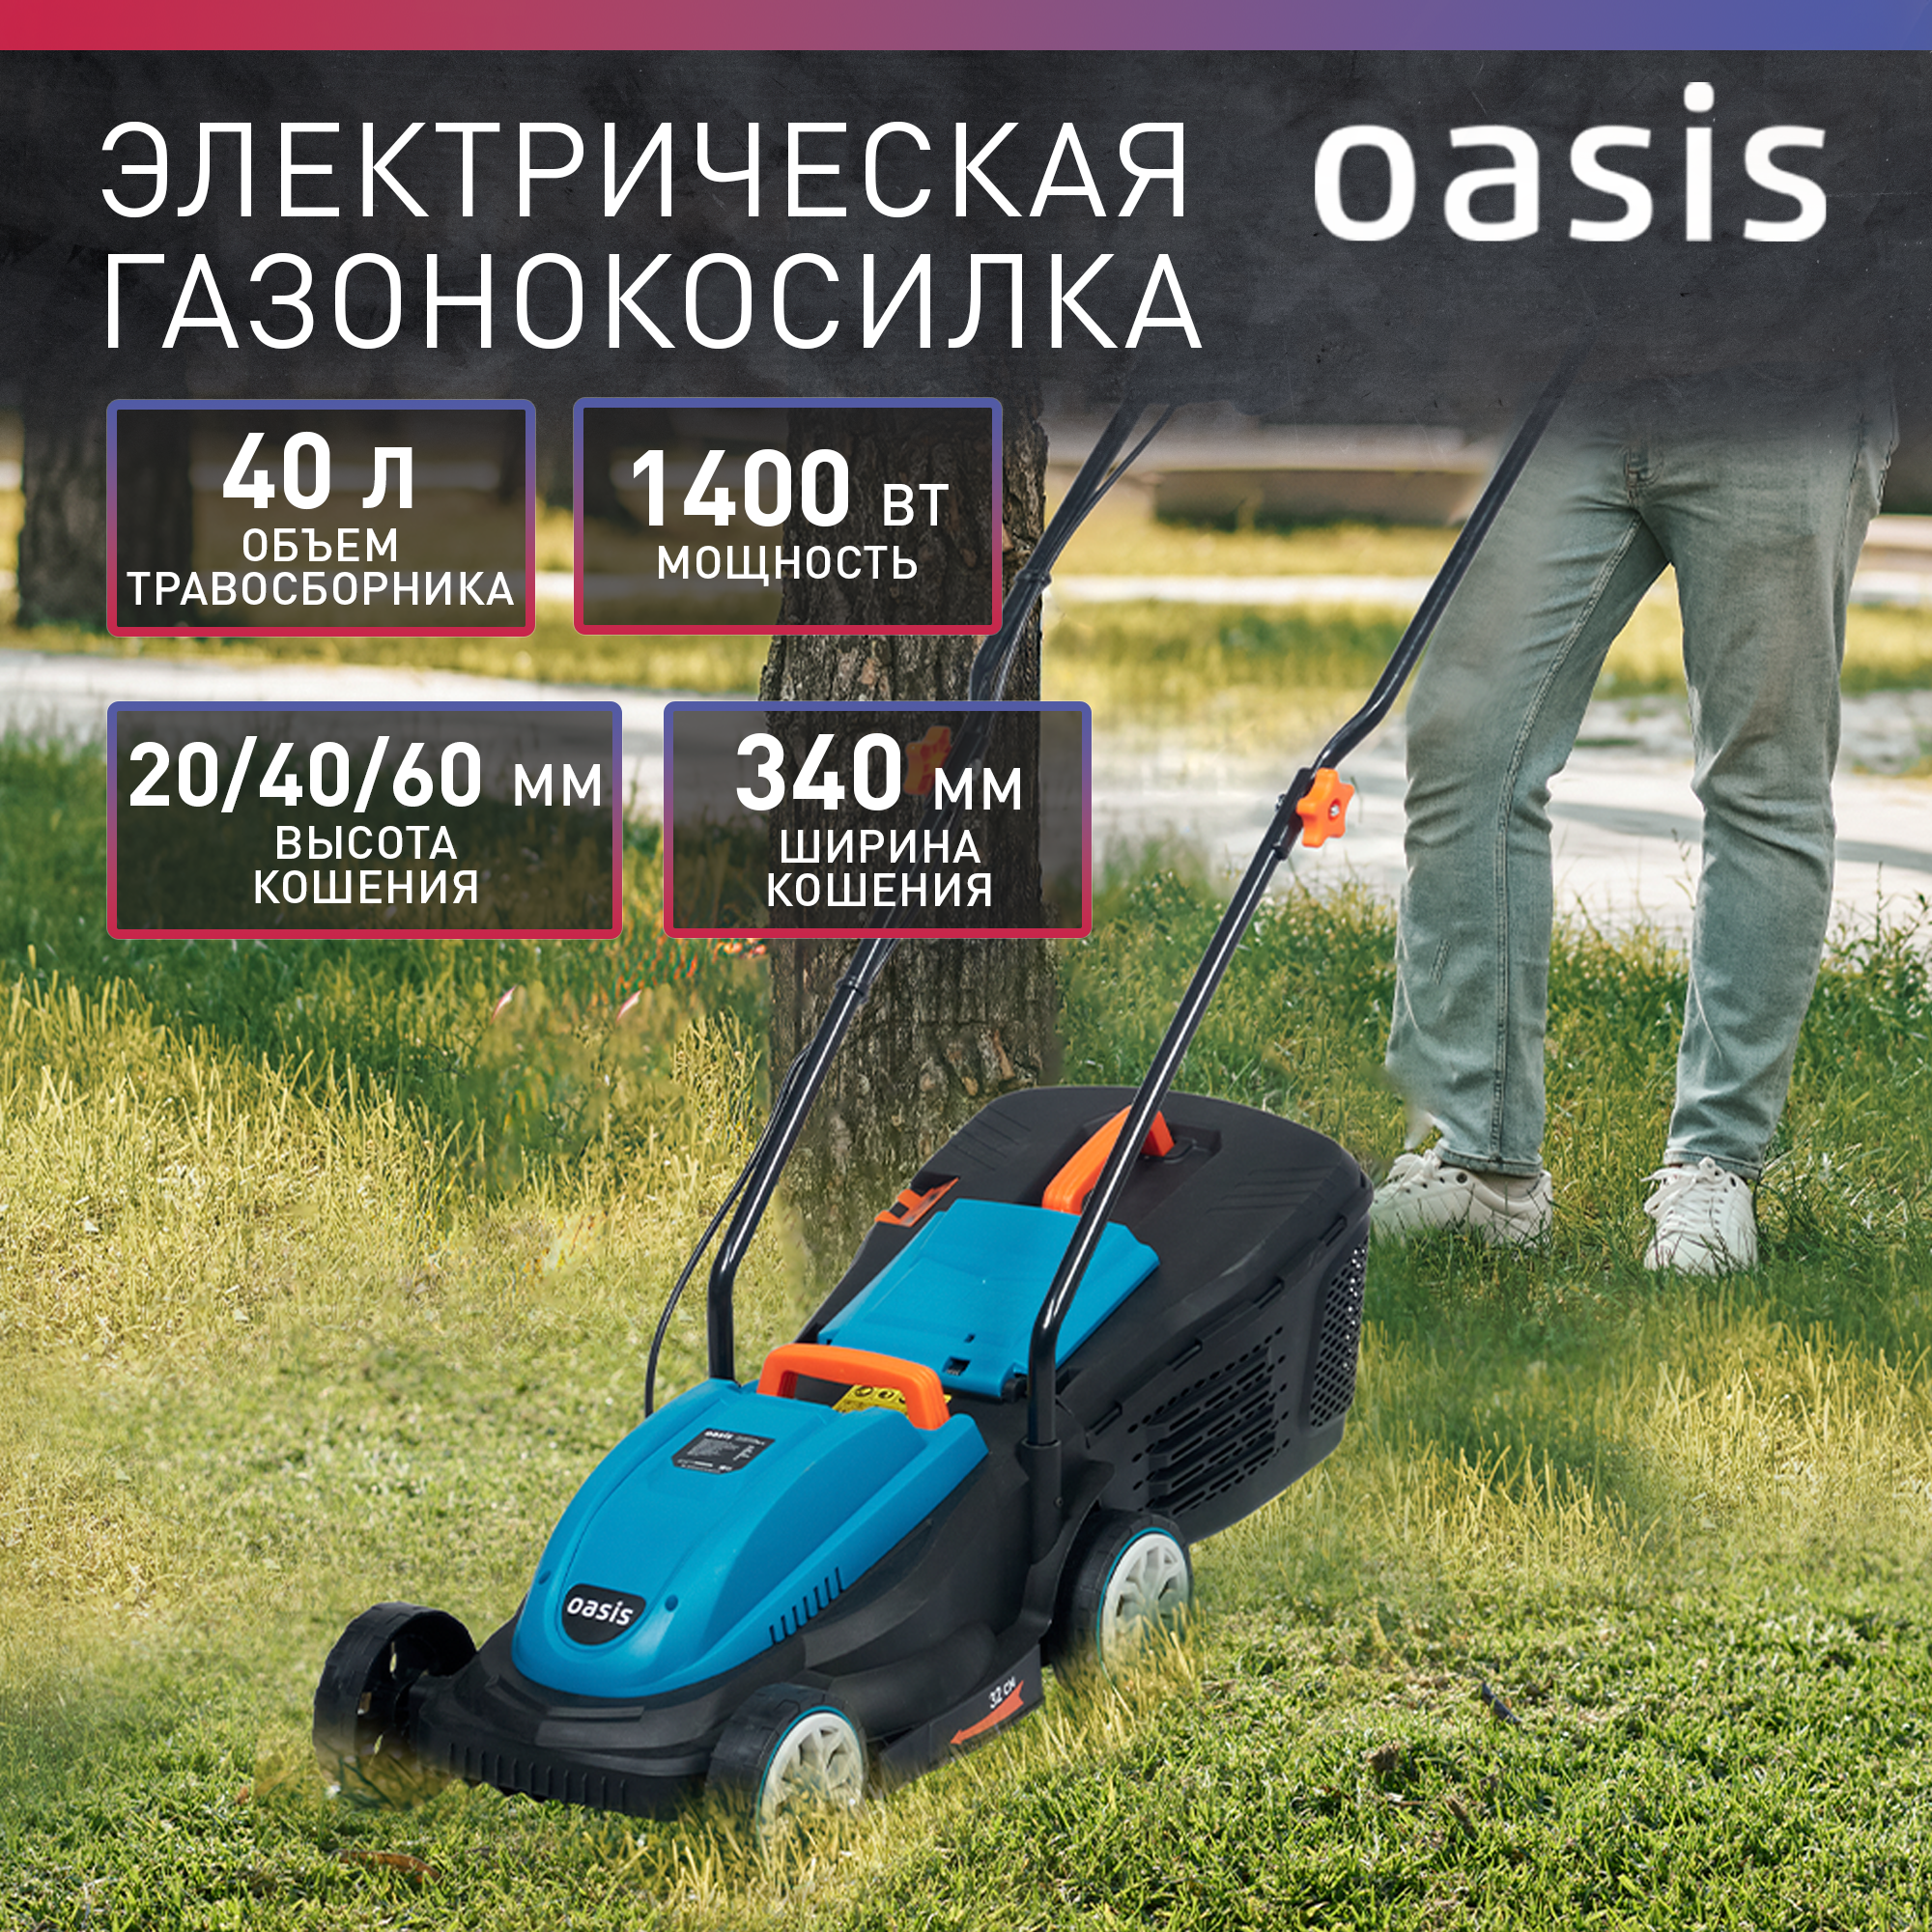 Электрическая газонокосилка Oasis GE-14, 1400 Вт, 32 см, 2021